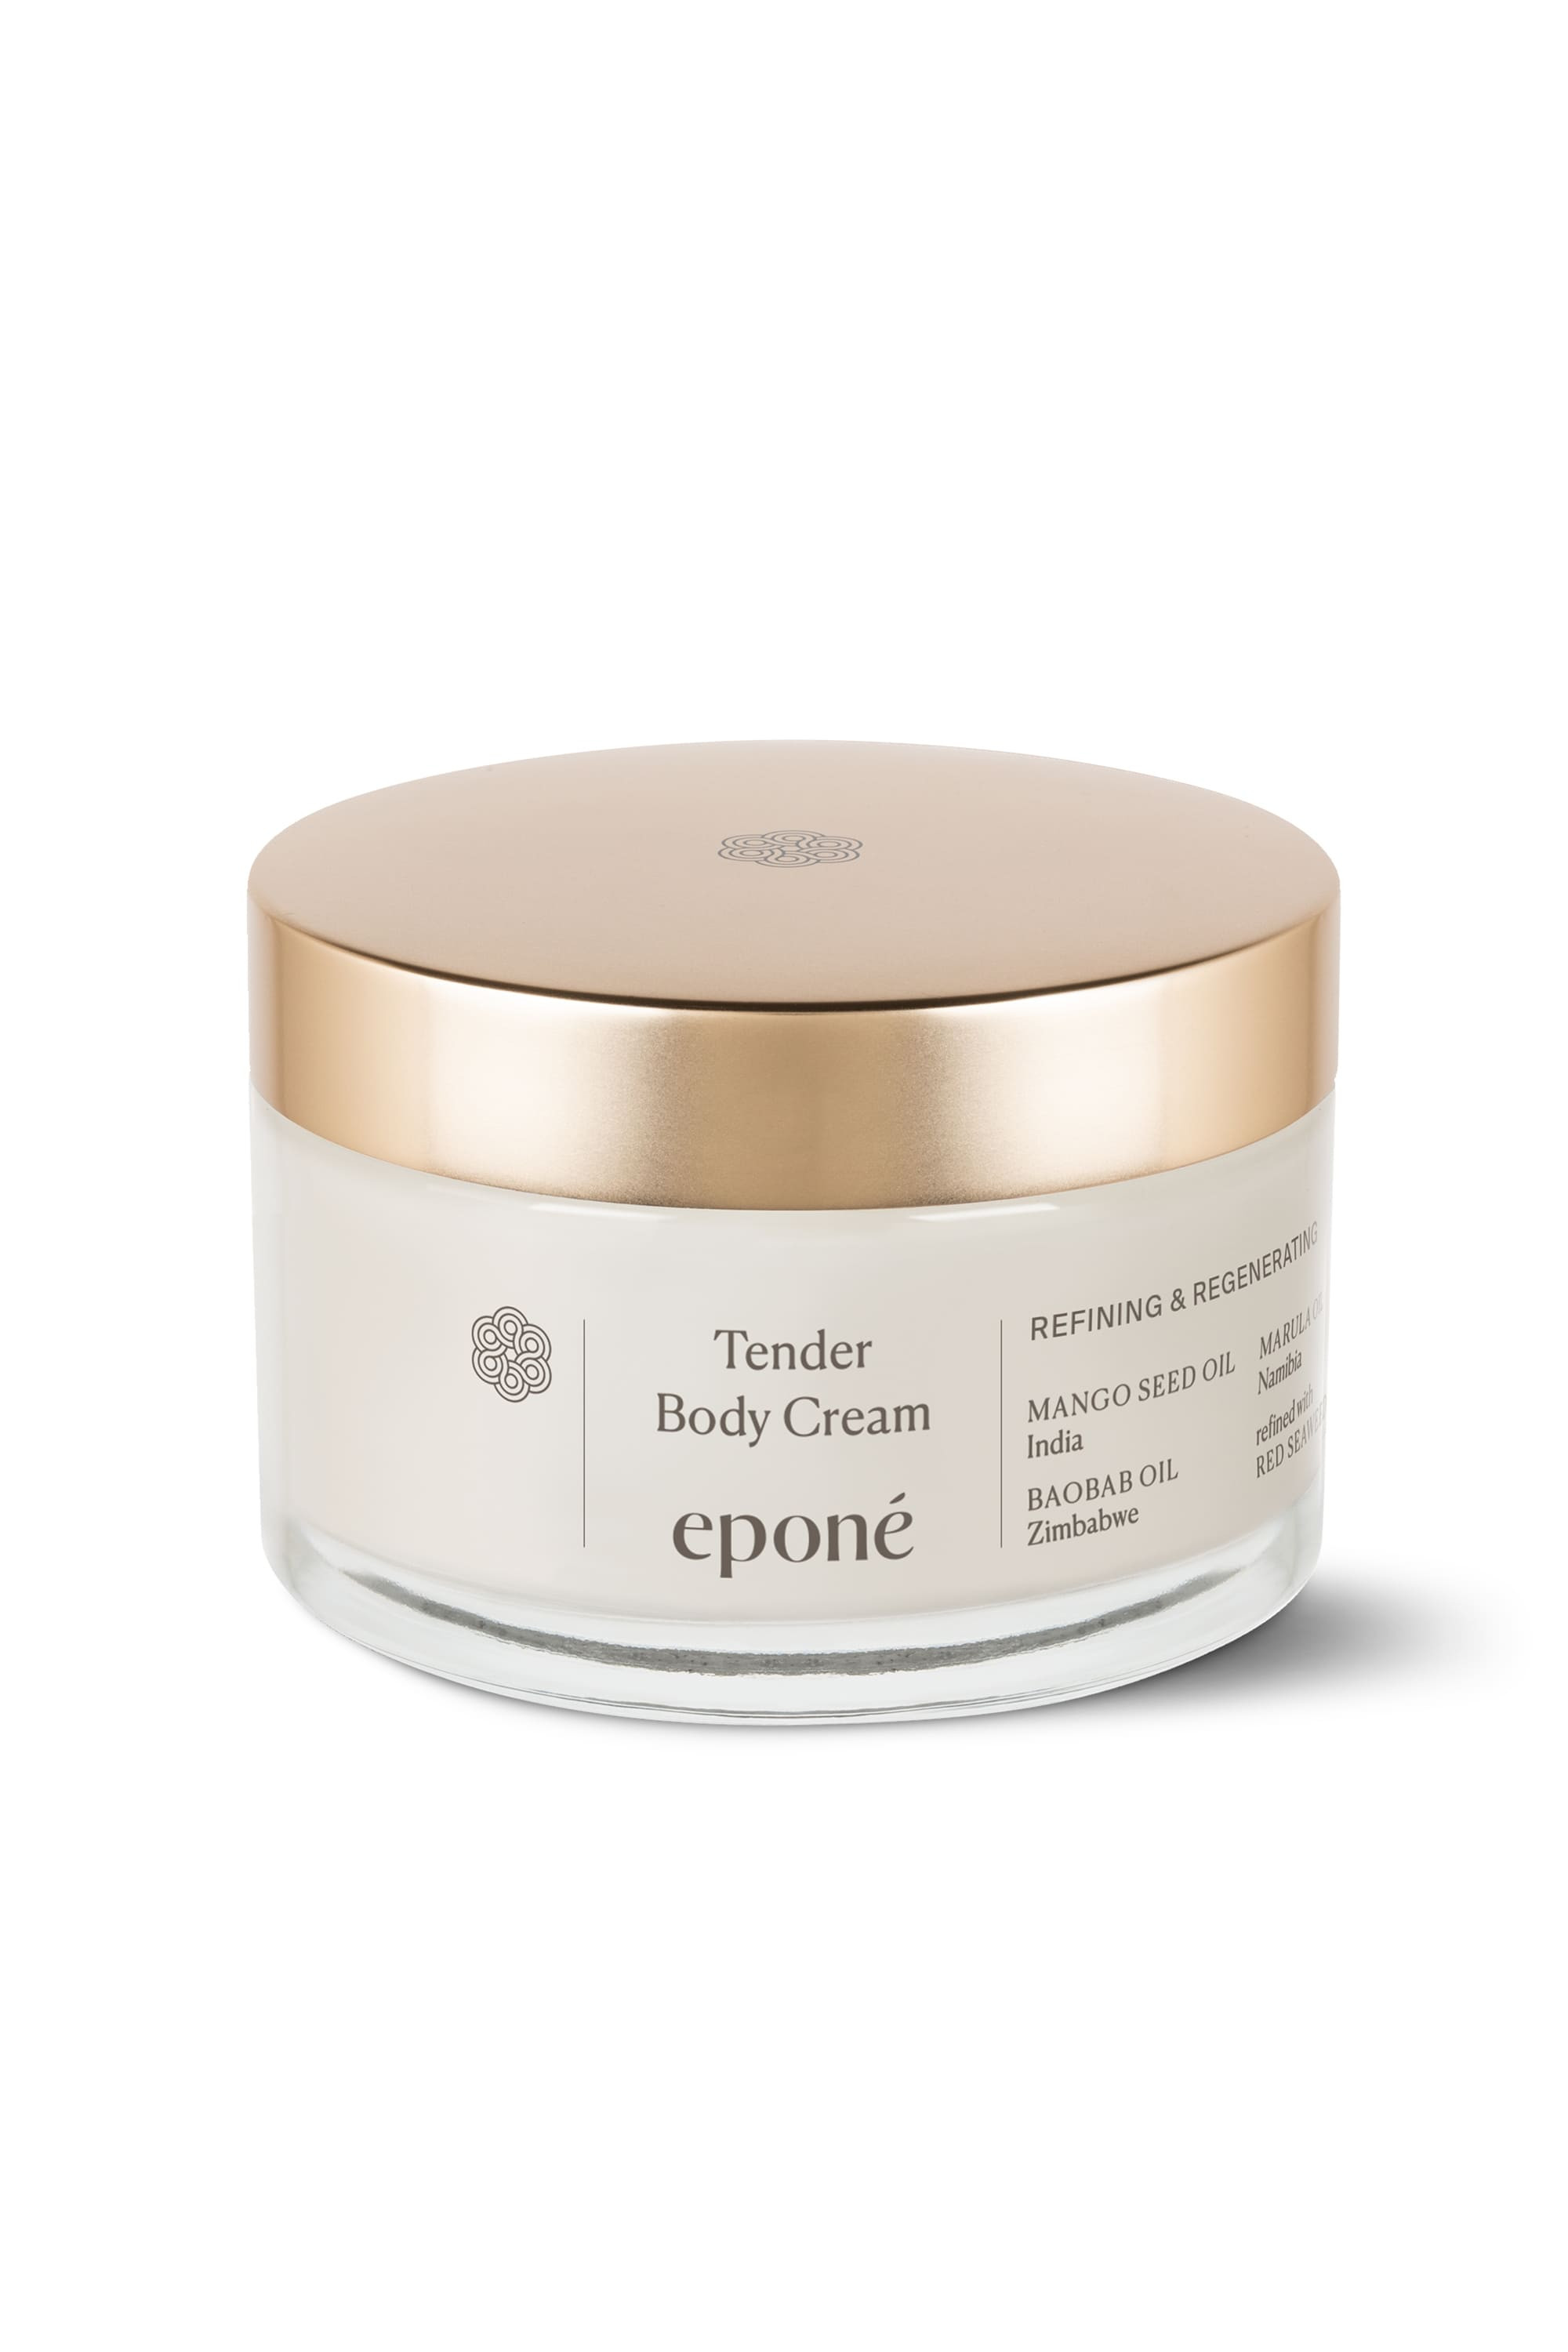 Tender Body Cream – Eponé